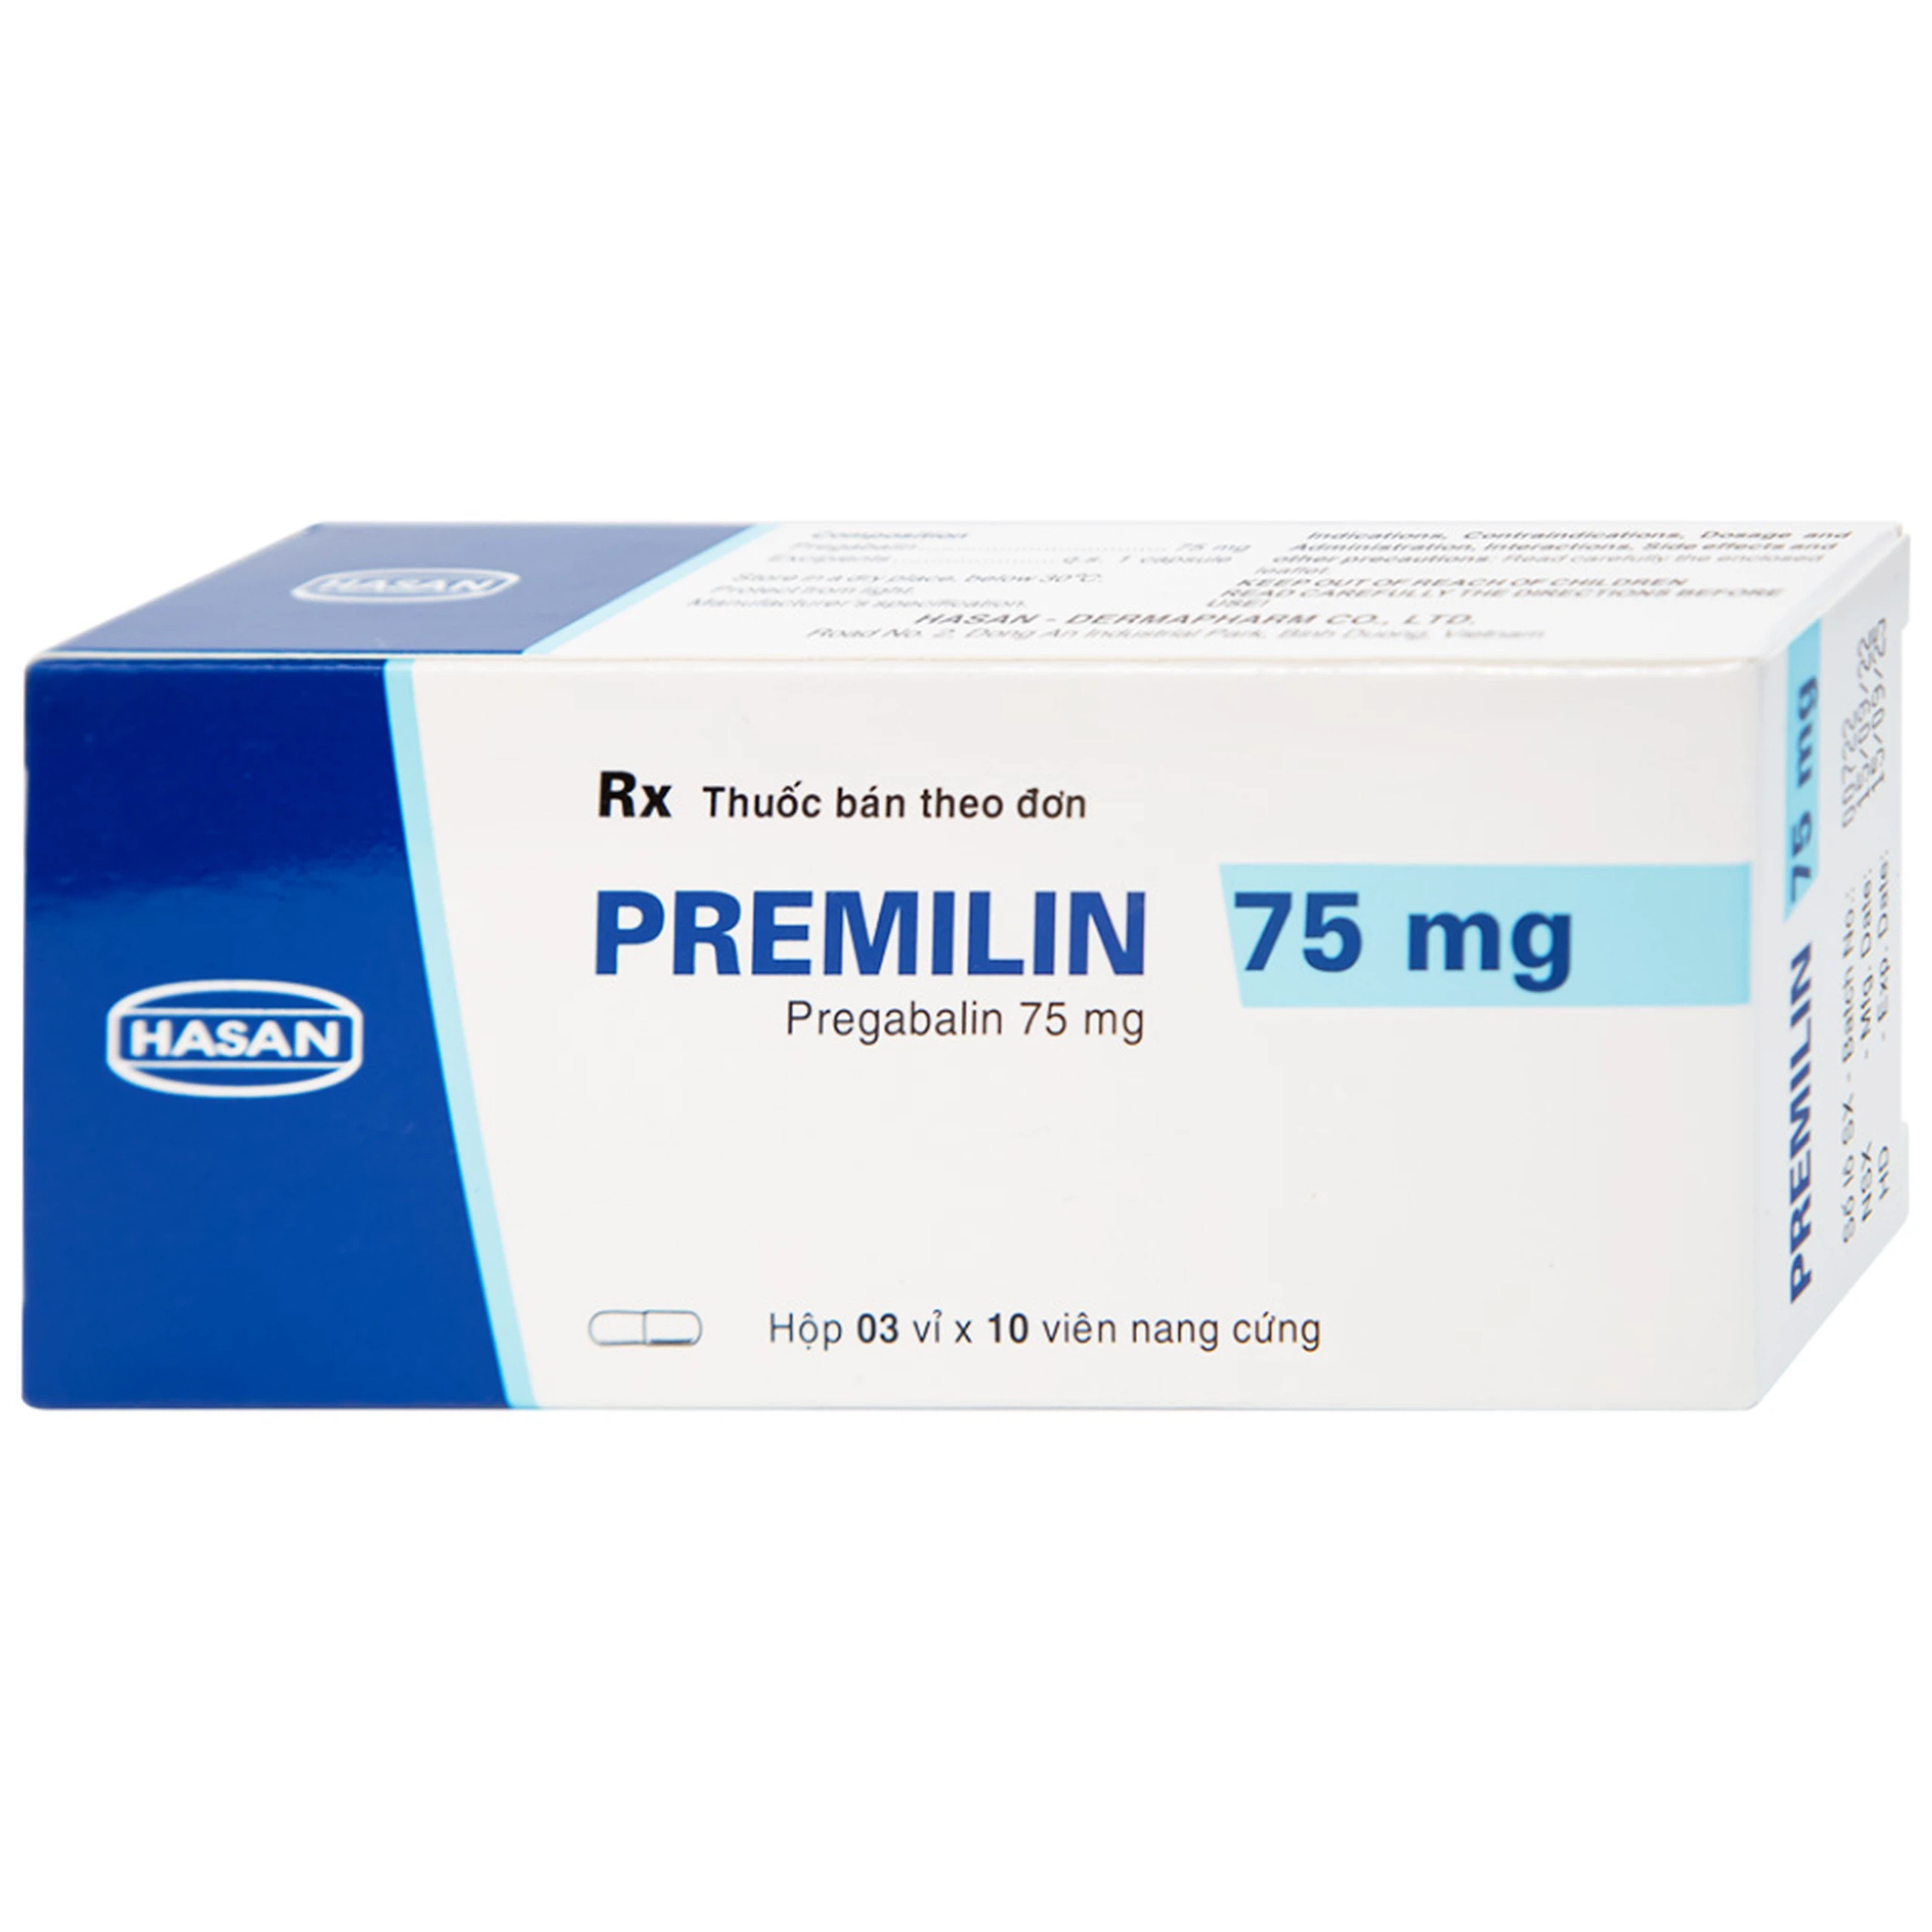 Thuốc Premilin 75mg Hasan điều trị động kinh cục bộ (3 vỉ x 10 viên)